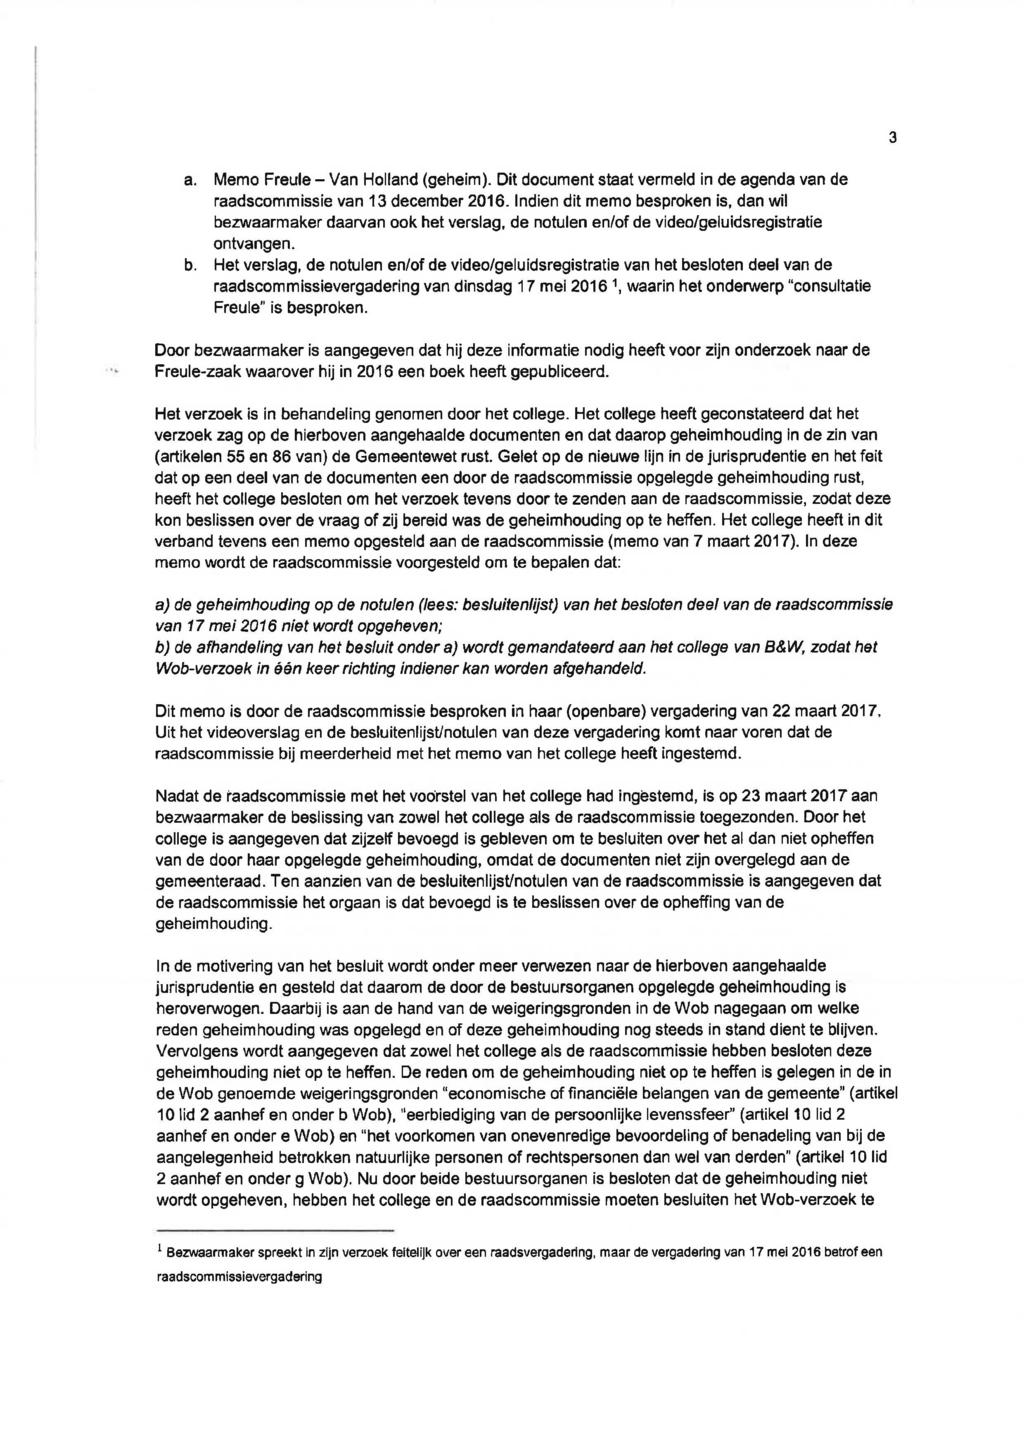 3 a. Memo Freule - Van Holland (geheim). Dit document staat vermeld in de agenda van de raadscommissie van 13 december 2016.